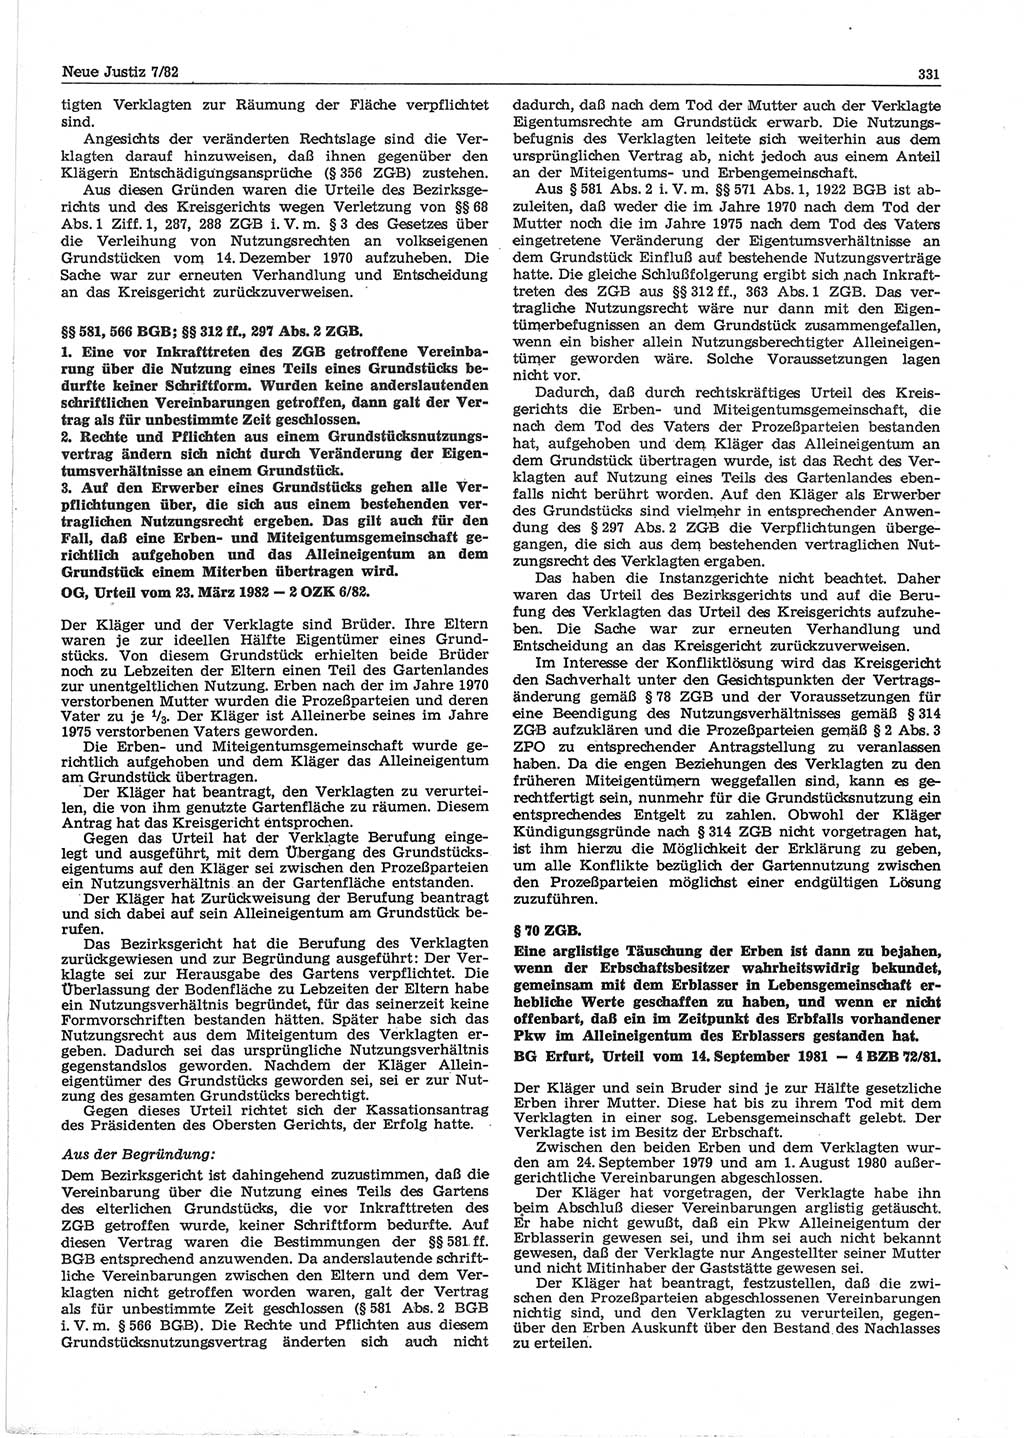 Neue Justiz (NJ), Zeitschrift für sozialistisches Recht und Gesetzlichkeit [Deutsche Demokratische Republik (DDR)], 36. Jahrgang 1982, Seite 331 (NJ DDR 1982, S. 331)